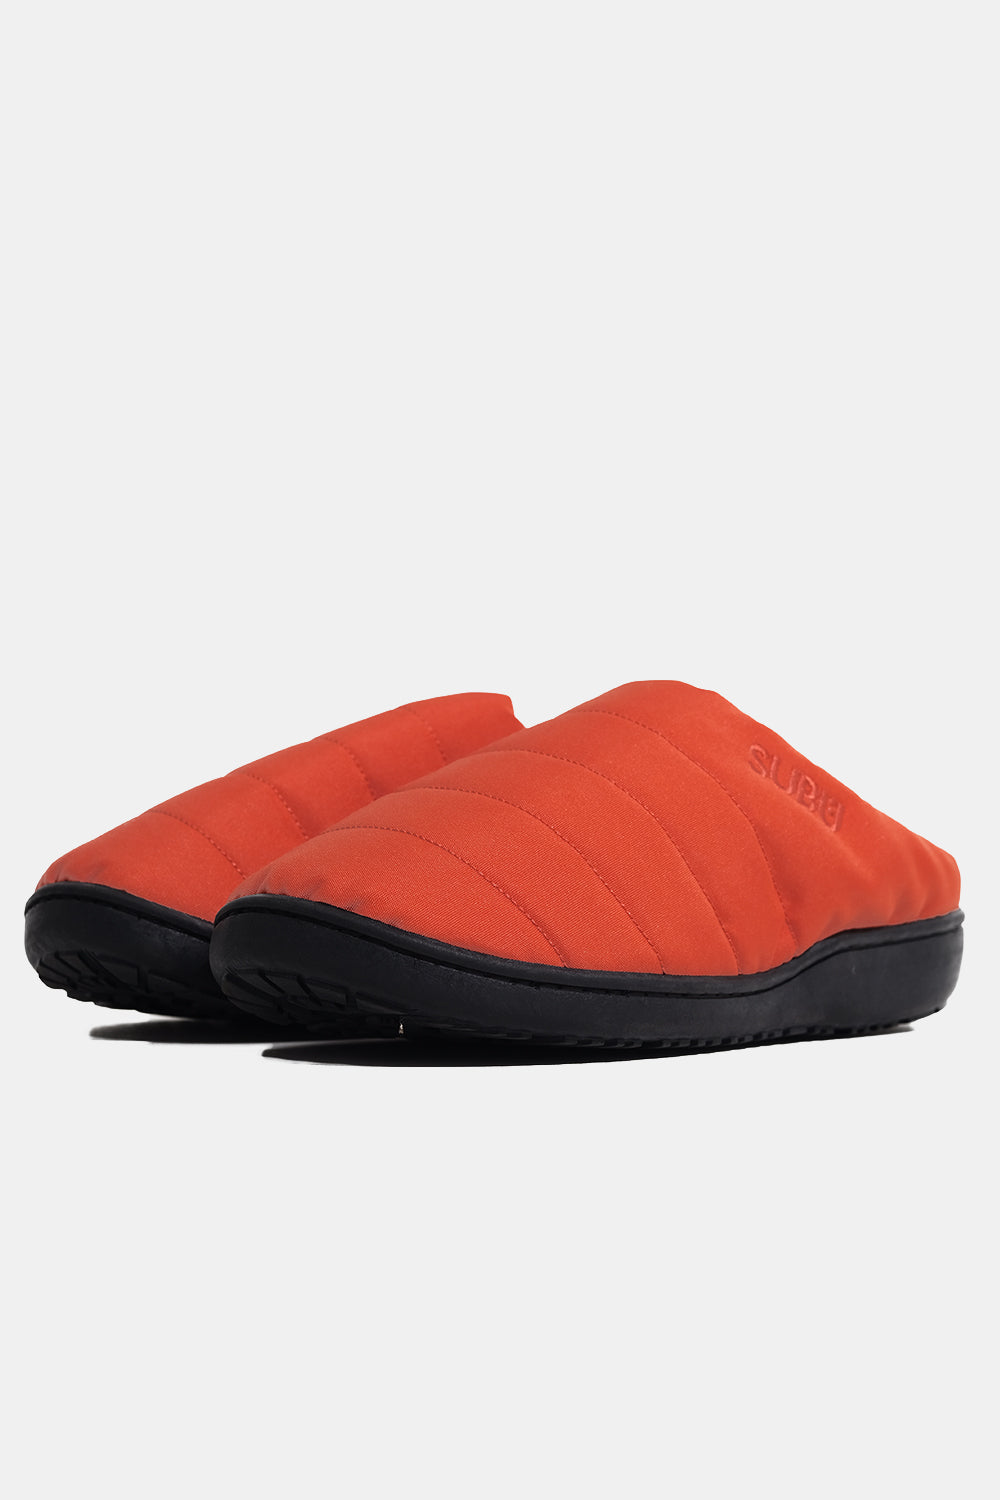 SUBU Indoor Outdoor Nannen Slippers (Orange) | Number Six